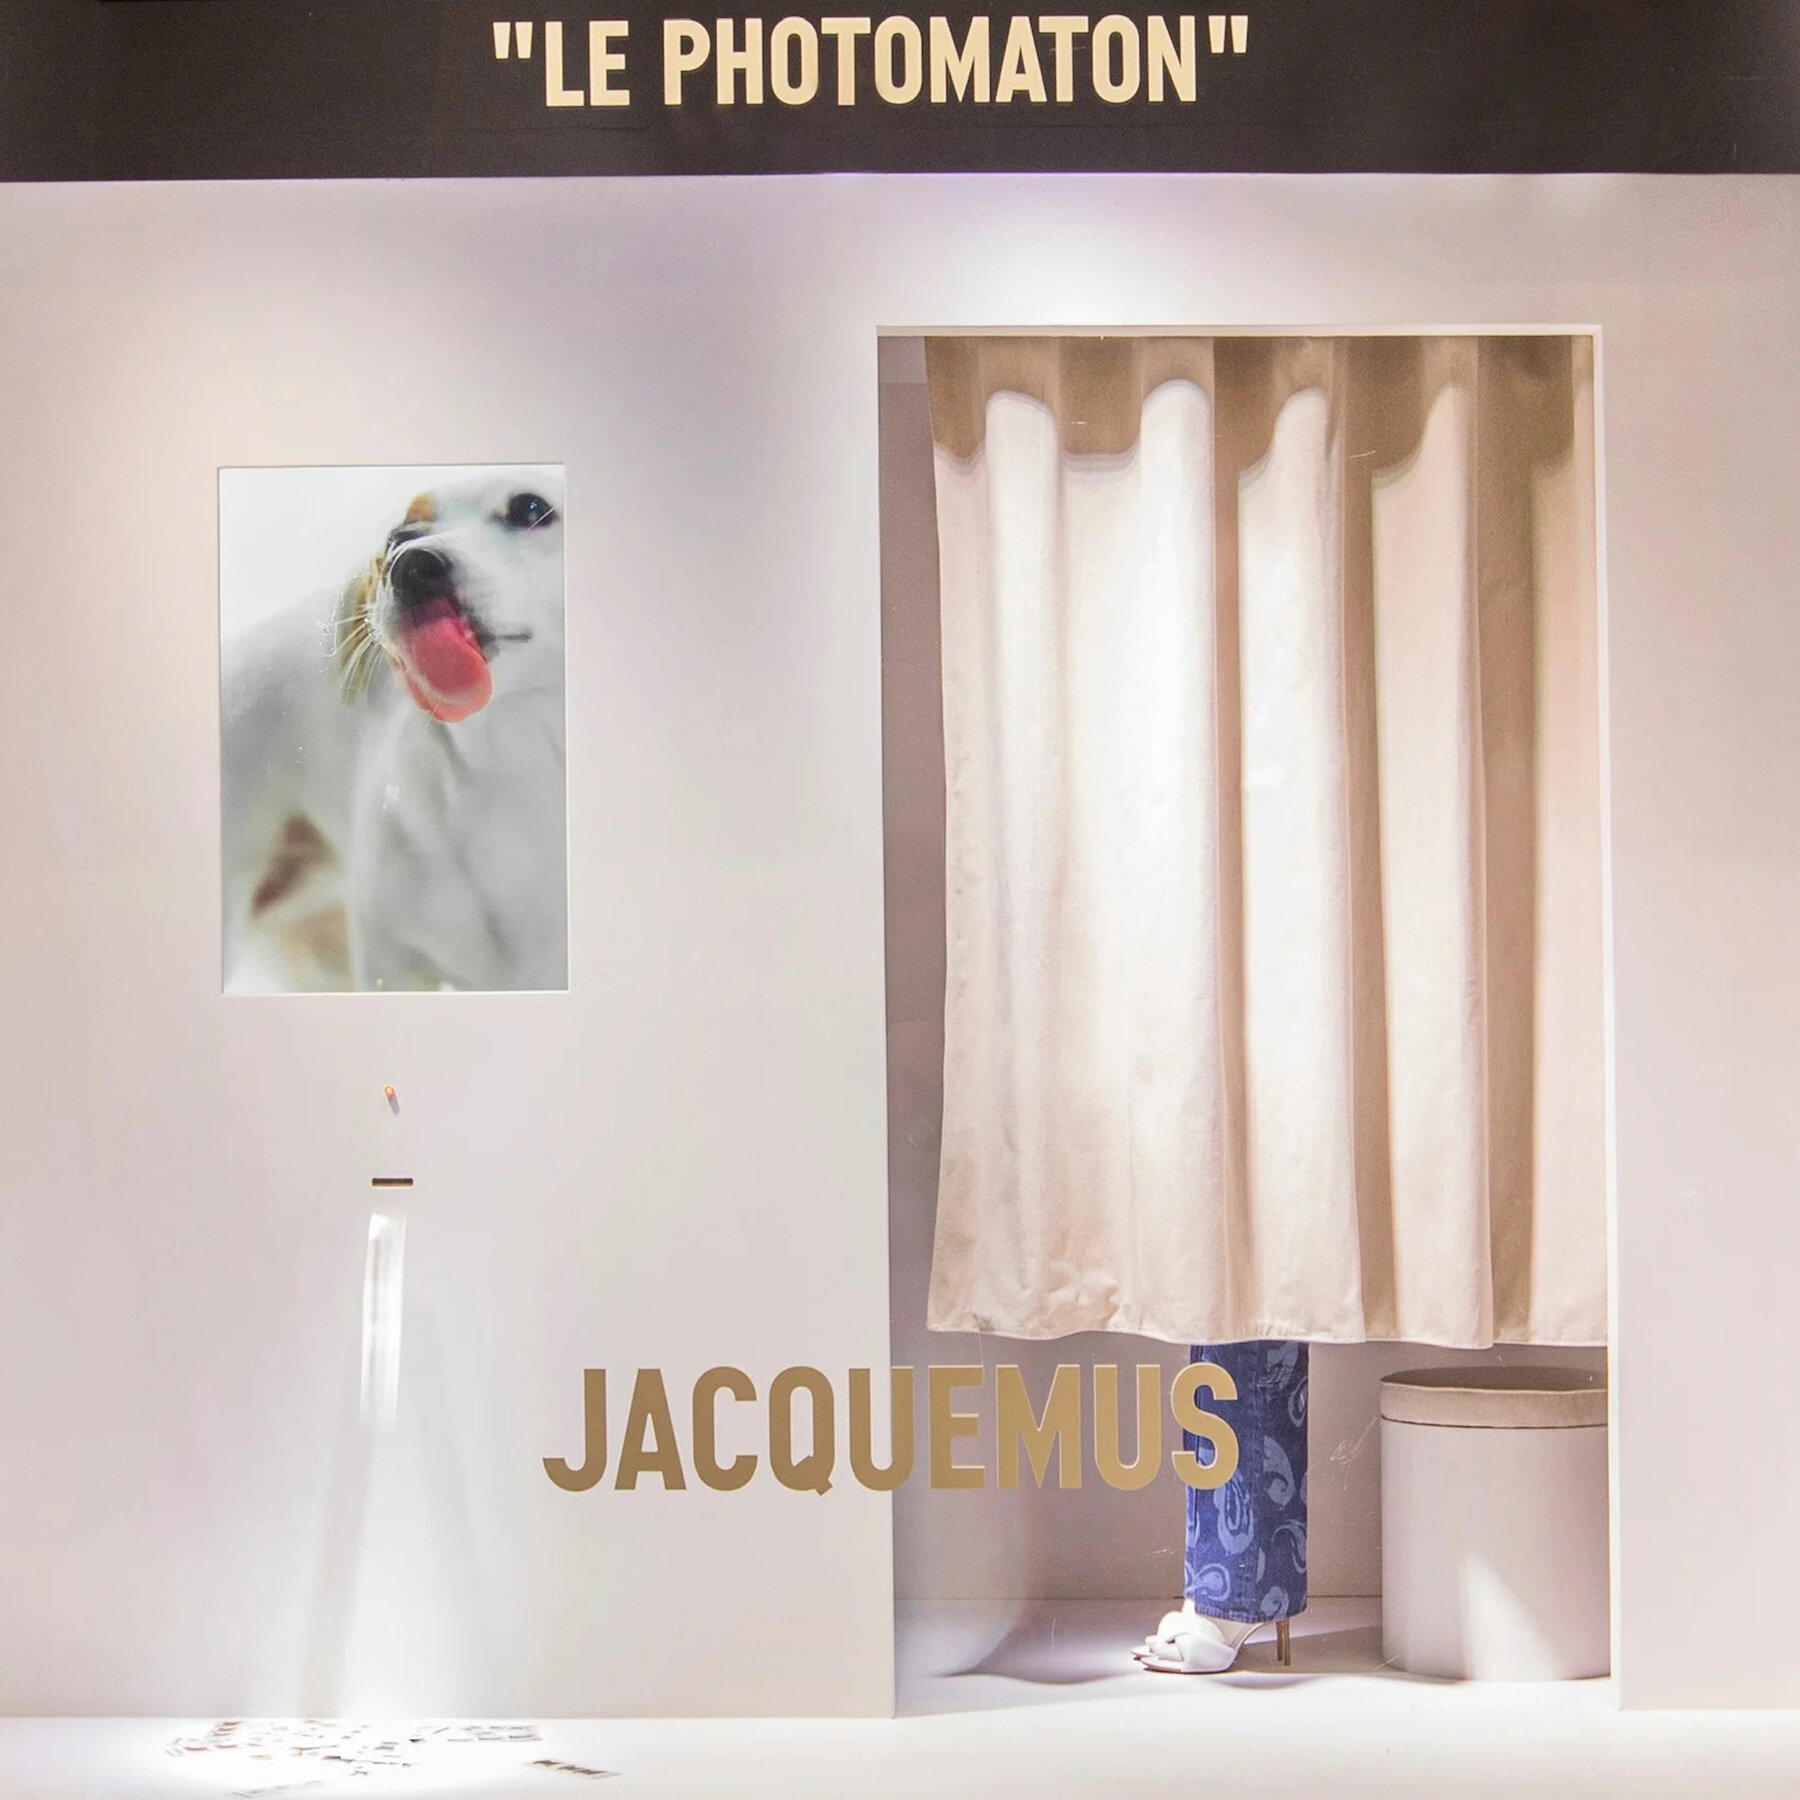 jacquemus-galerie-lafayette-paris-takeover-designboom-06a